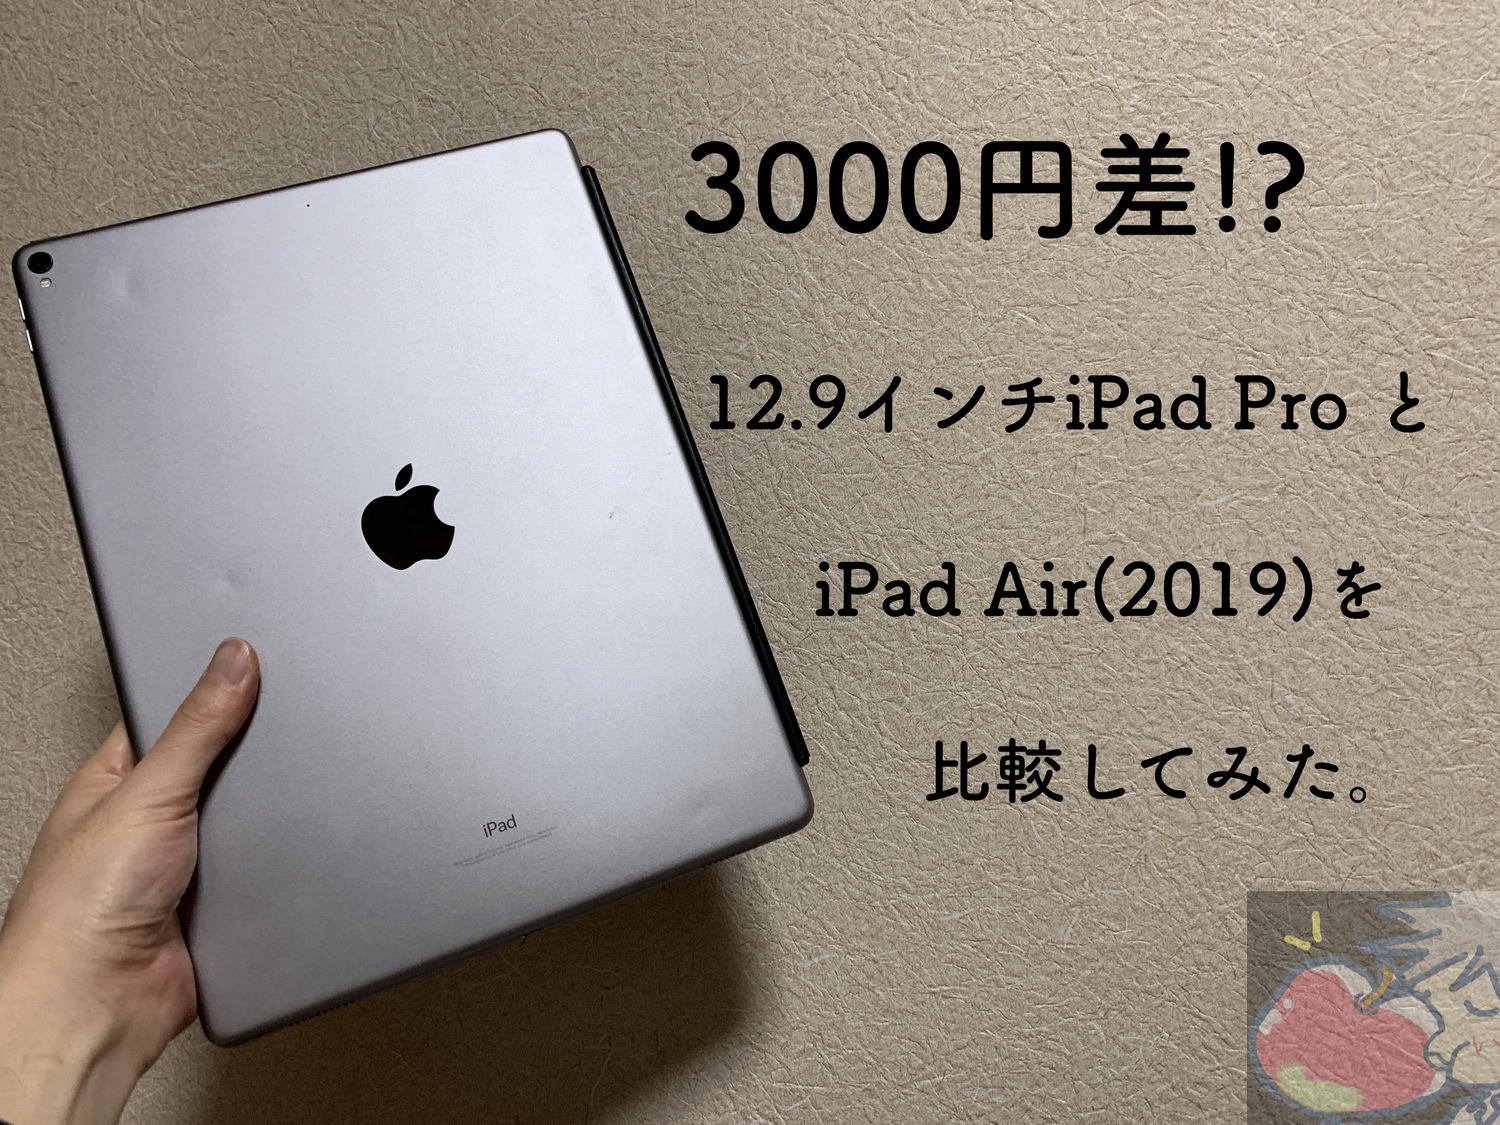 【3000円差】iPad Air(2019)と12.9インチiPad Pro(2017)を比較してみた